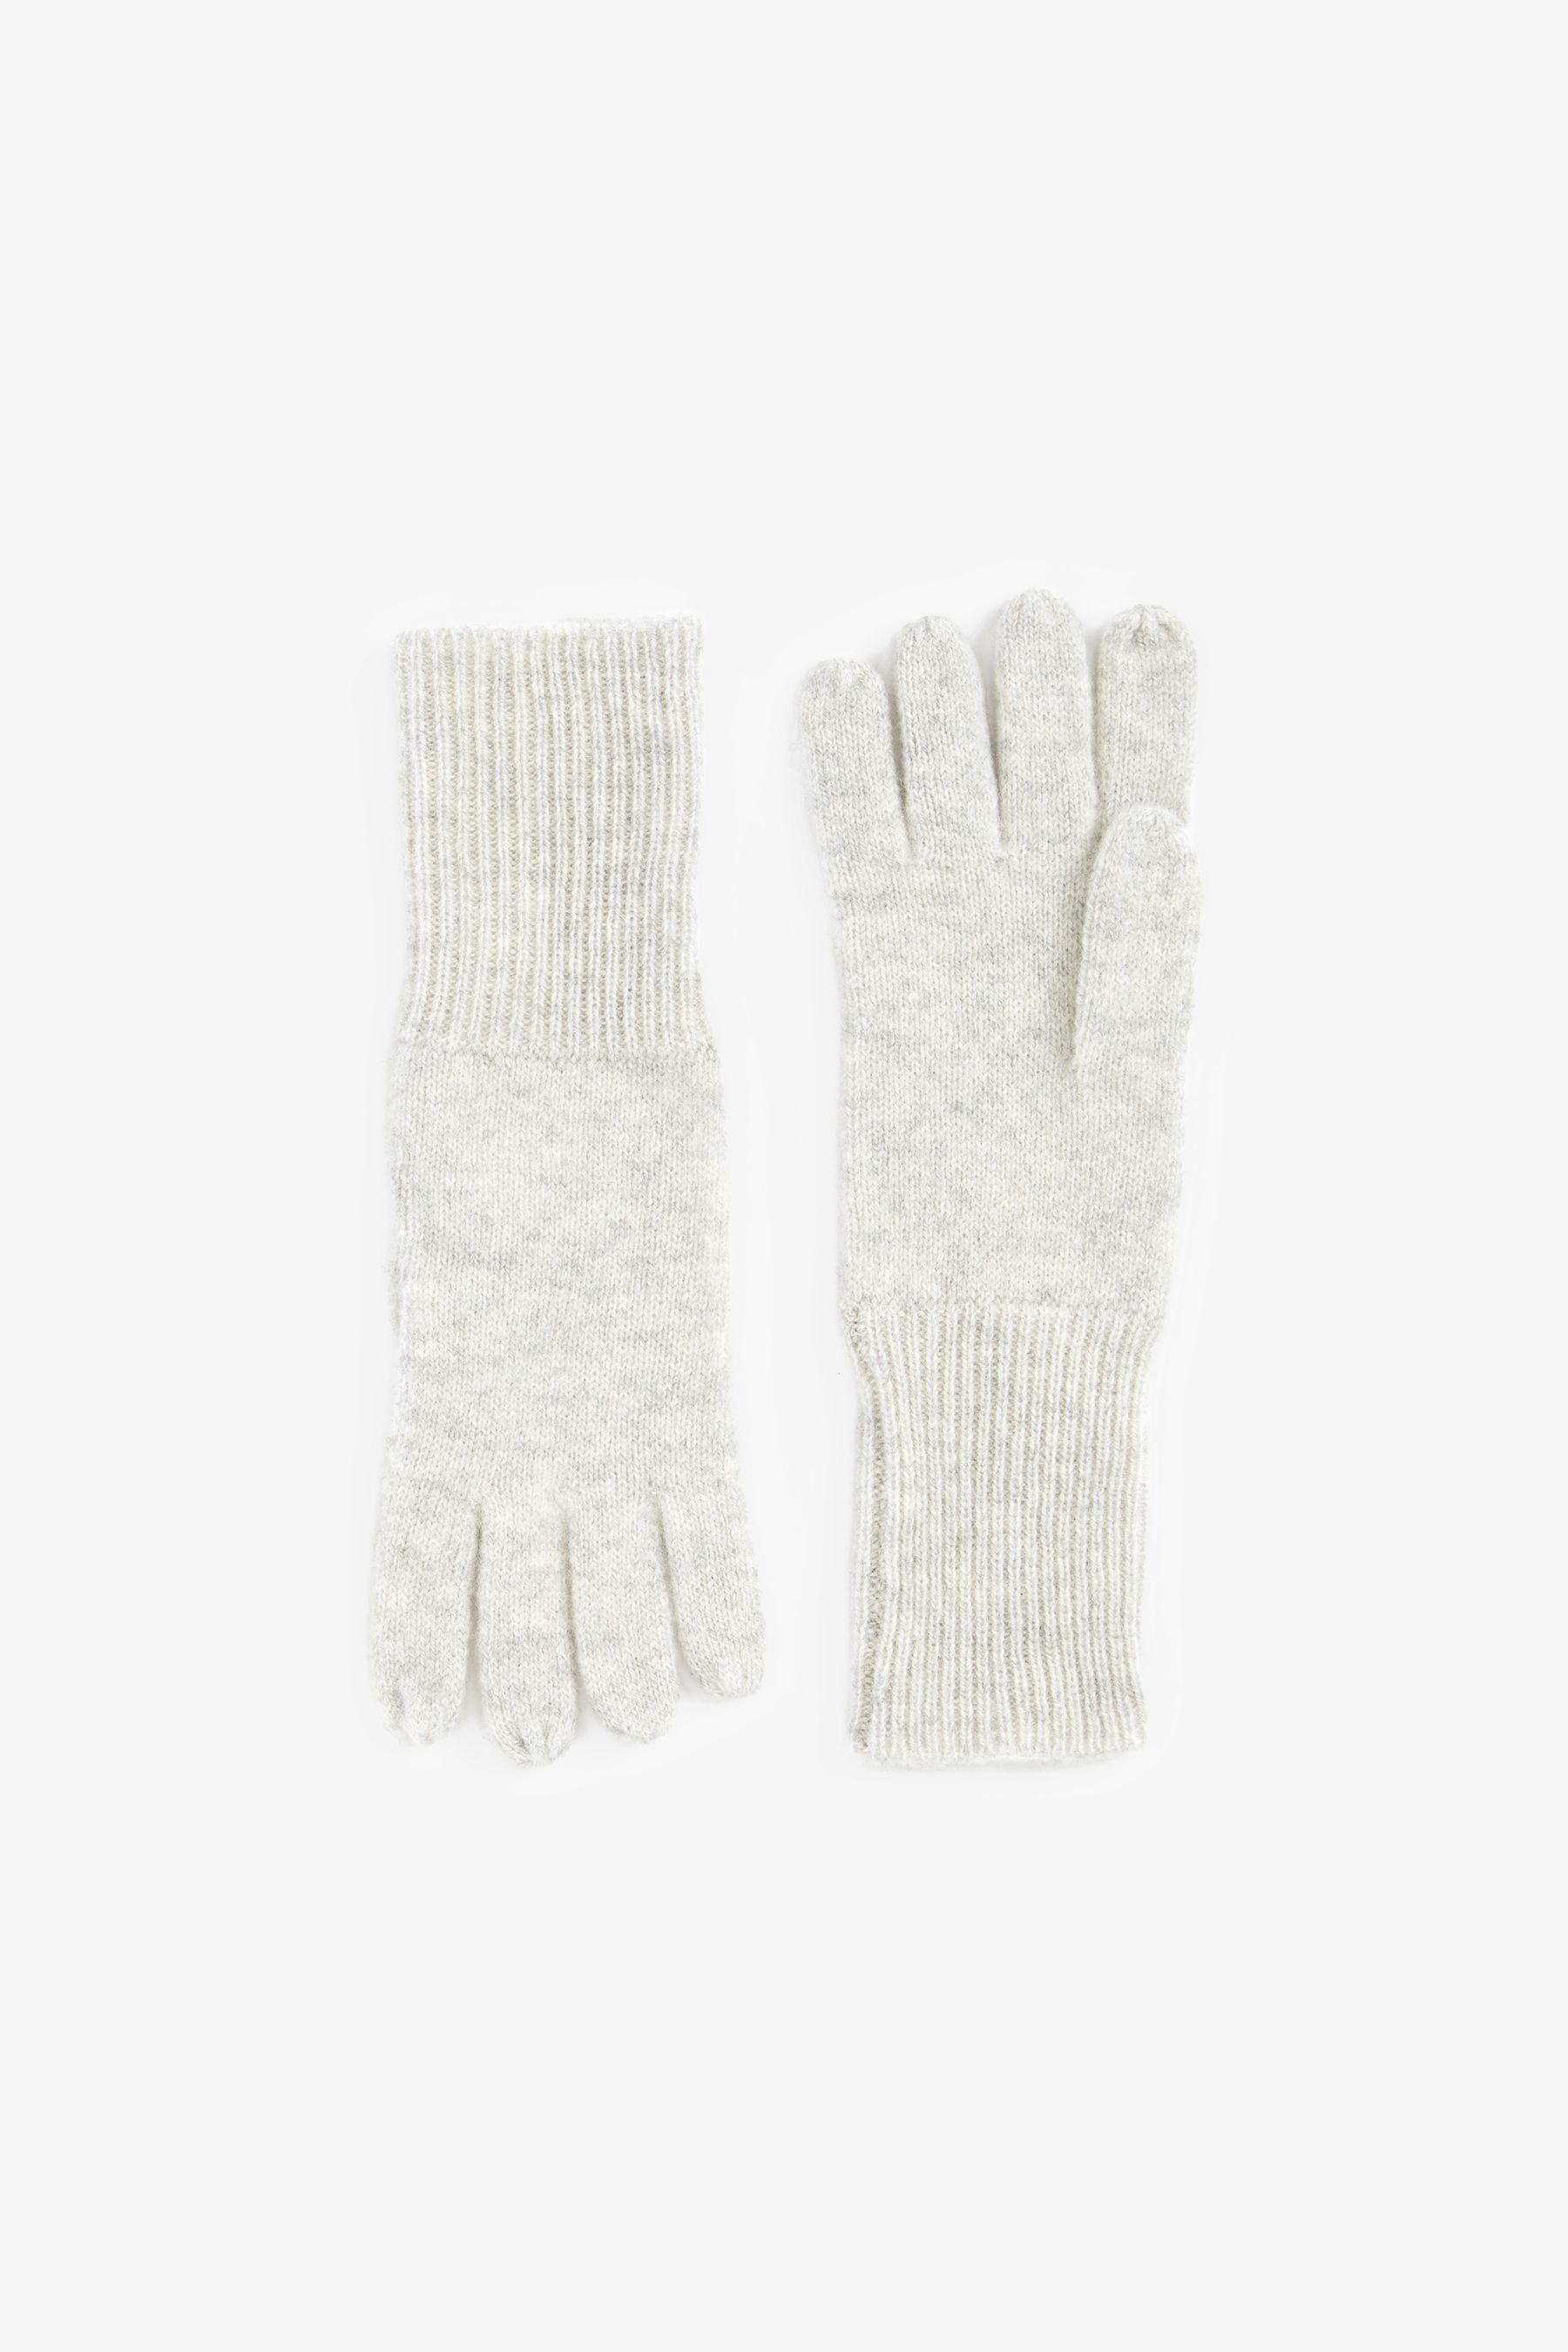 Next Strickhandschuhe Collection Luxe 100 % aus Handschuhe Grey Kaschmir